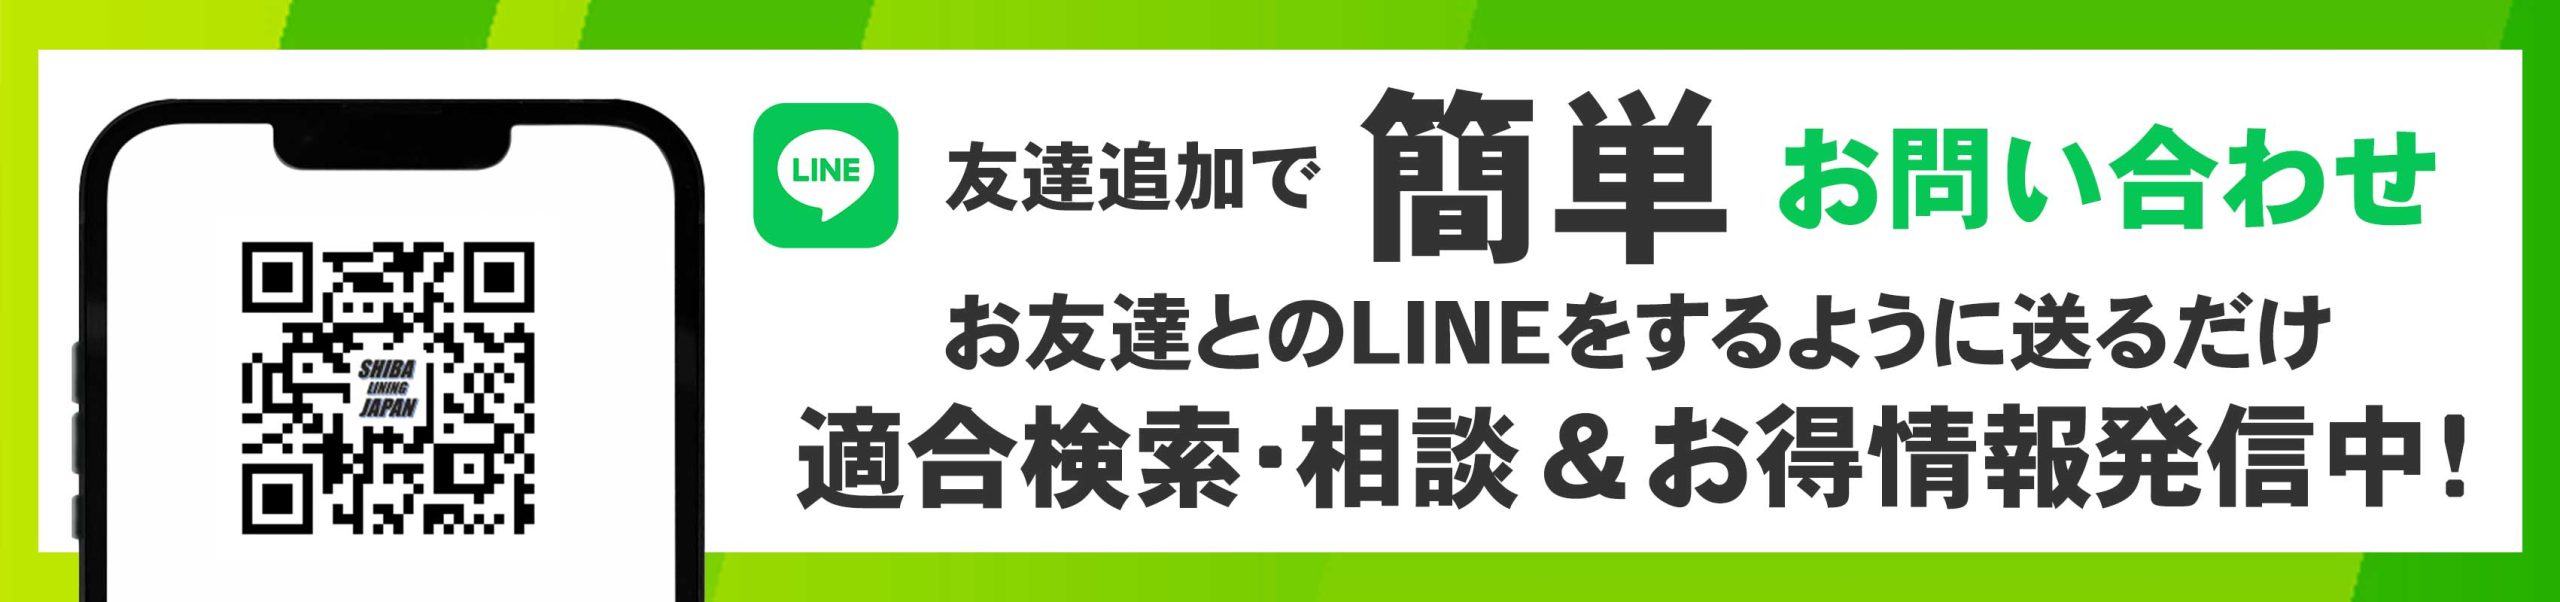 QR-LINE登録h